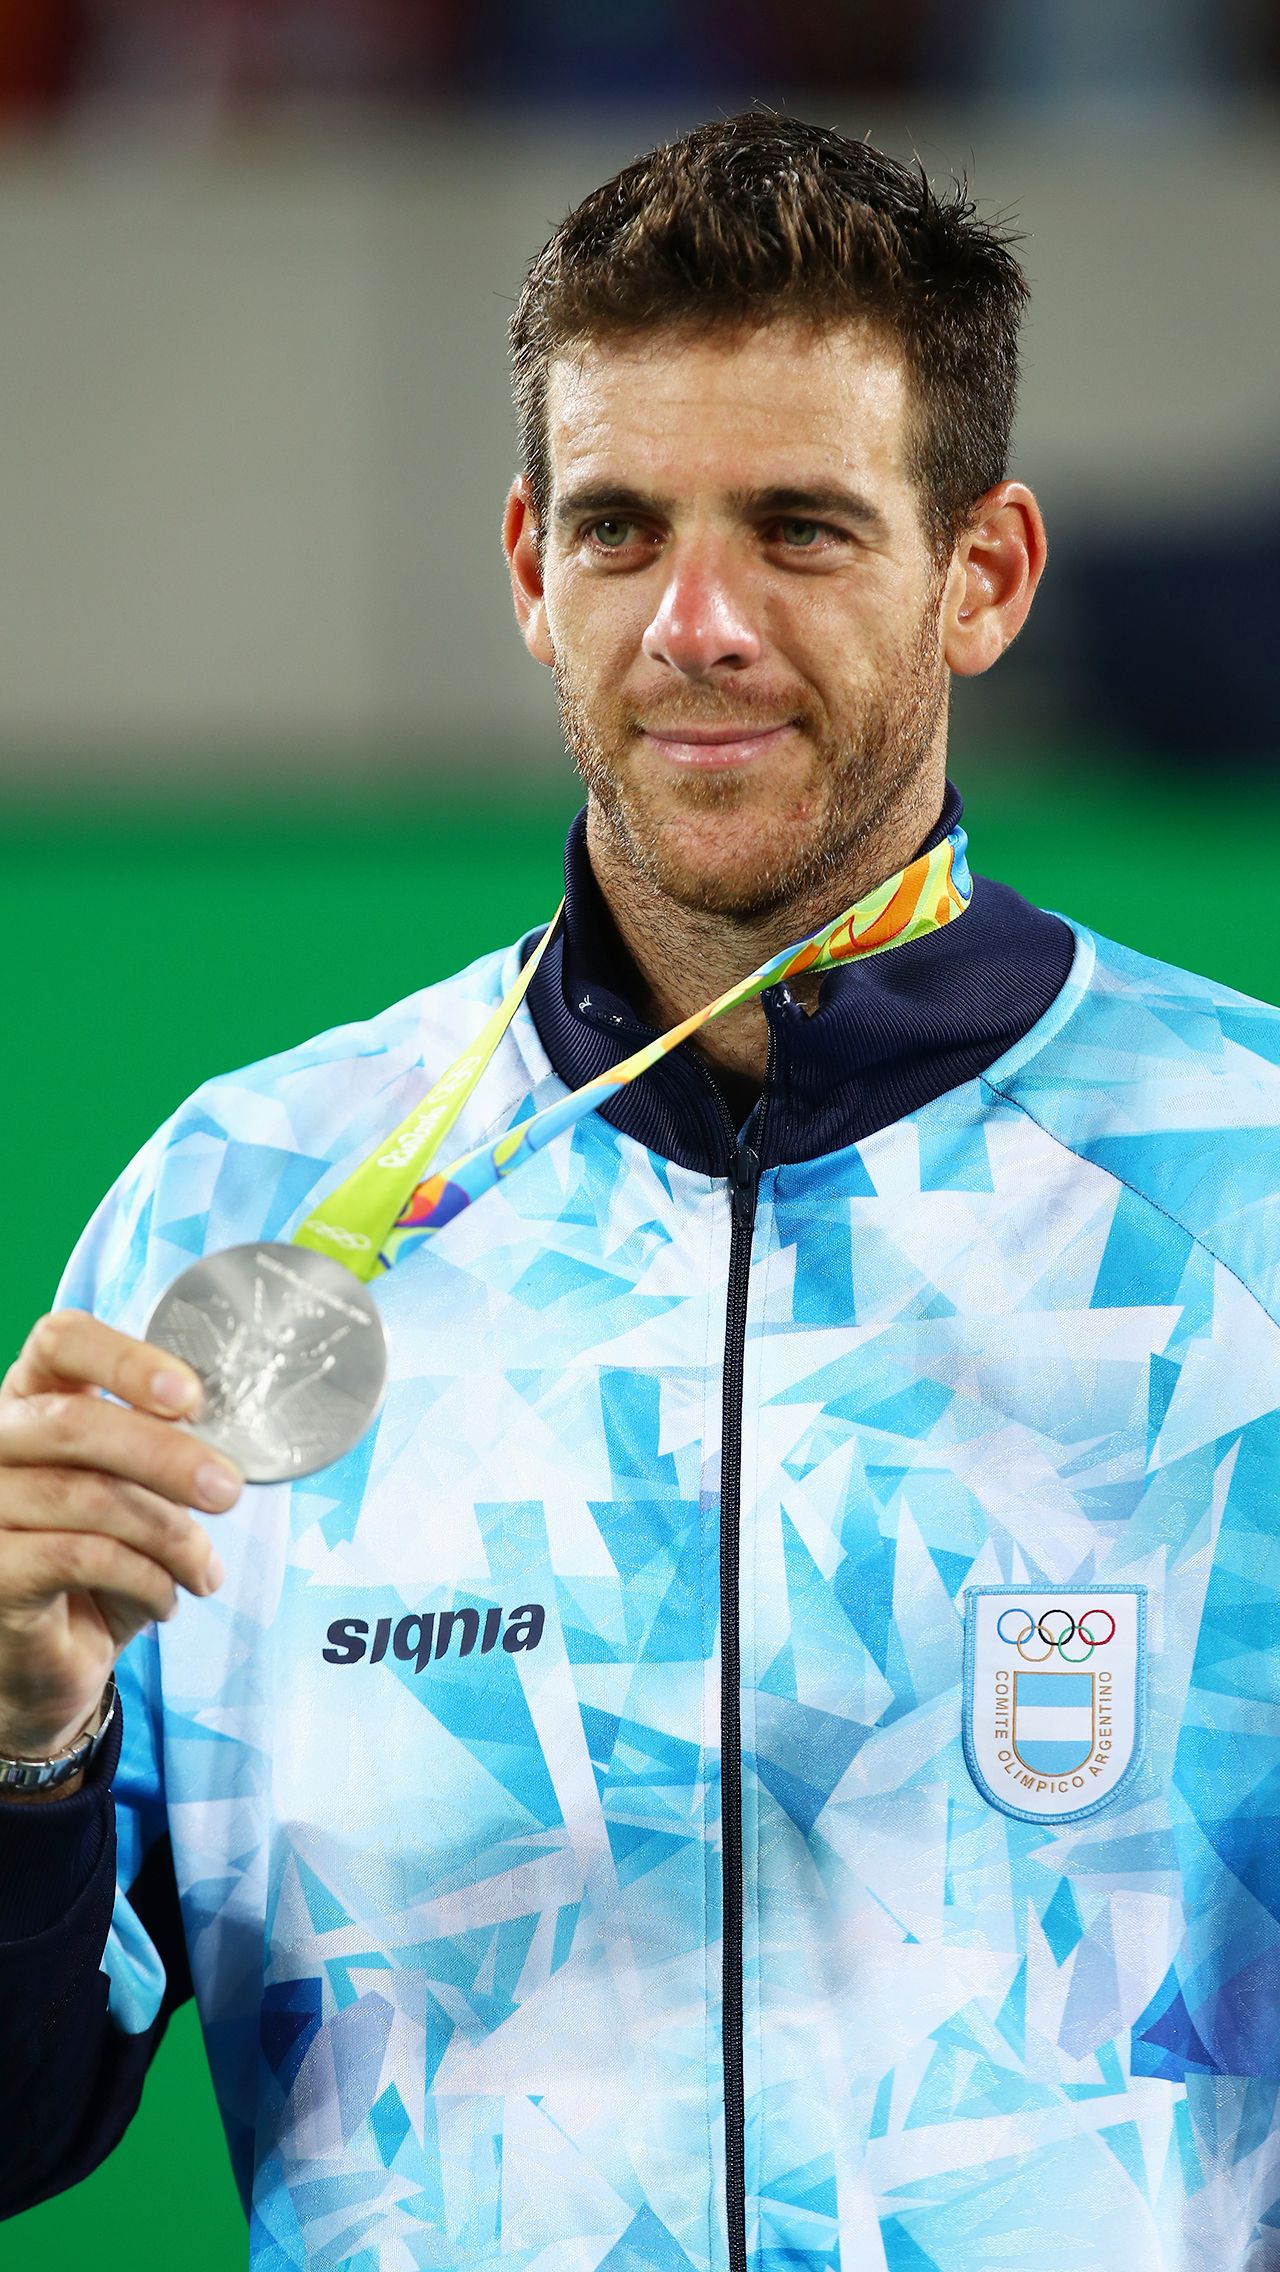 В Рио-2016 Хуан-Мартин пополнил свою коллекцию ещё и серебром. В первом круге аргентинец выбил из сетки первую ракетку мира Новака Джоковича, а в полуфинале был повержен Рафаэль Надаль.